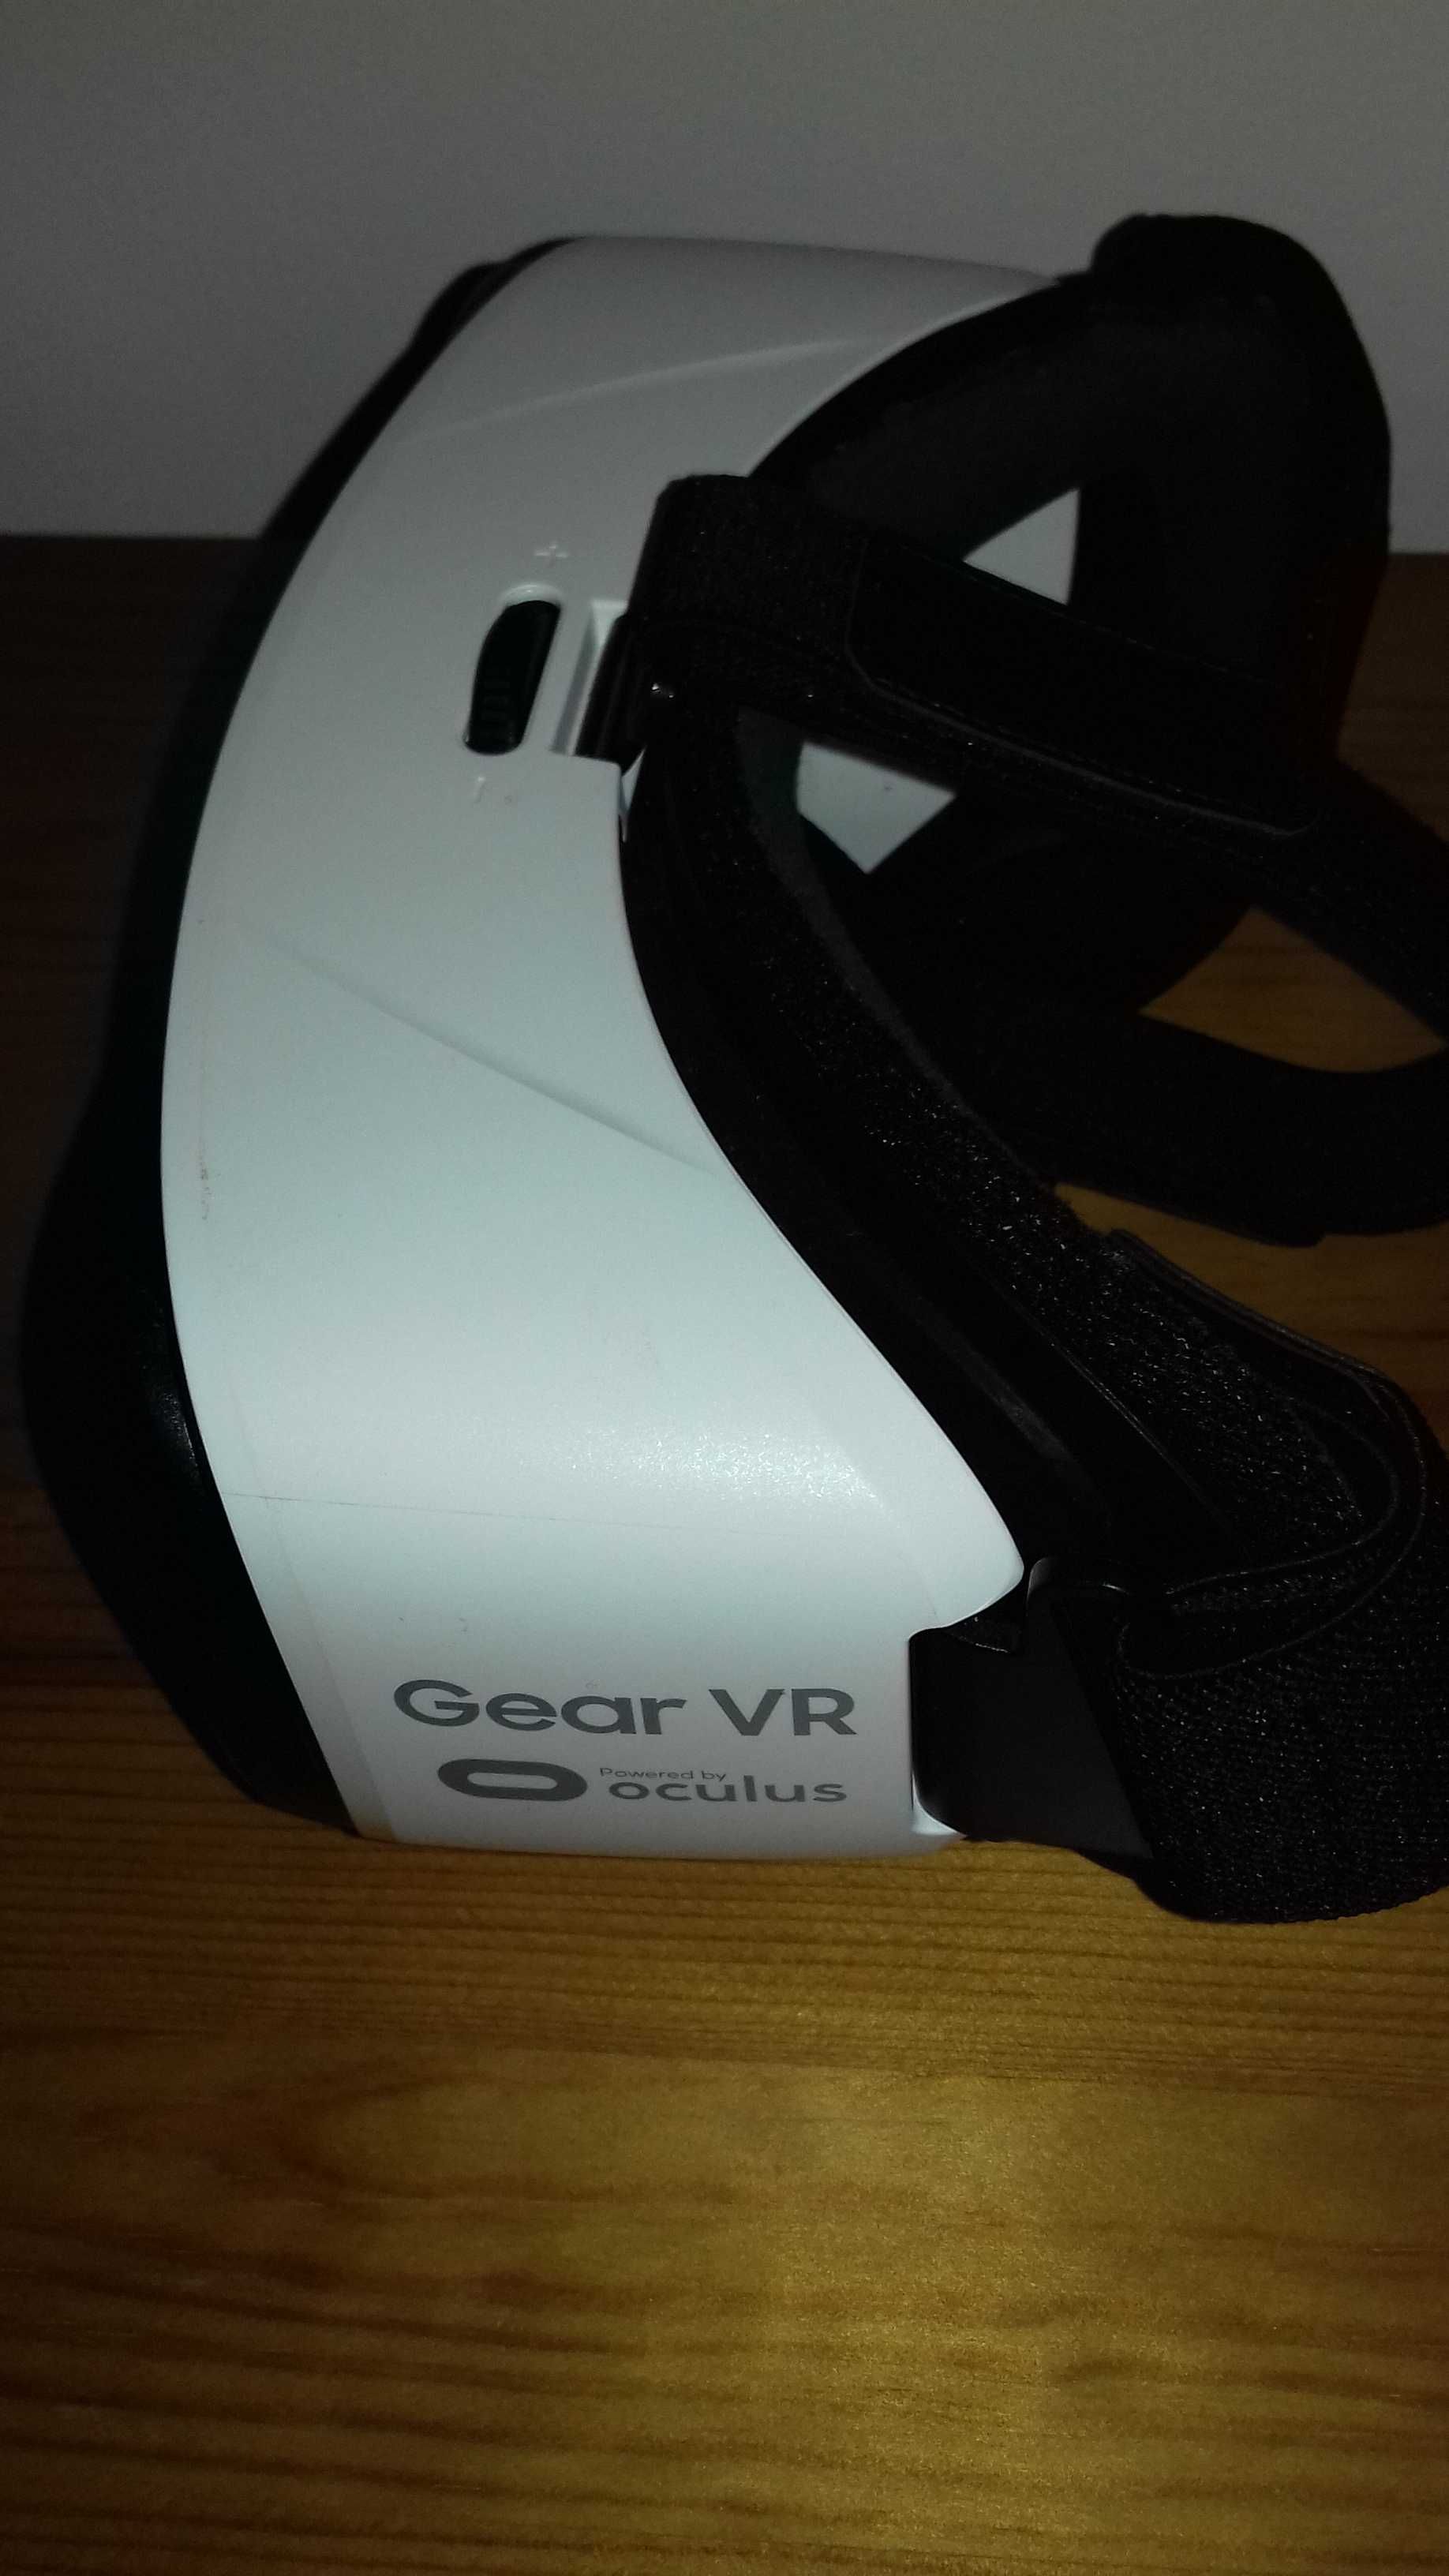 Óculos de Realidade Virtual Samsung Gear VR